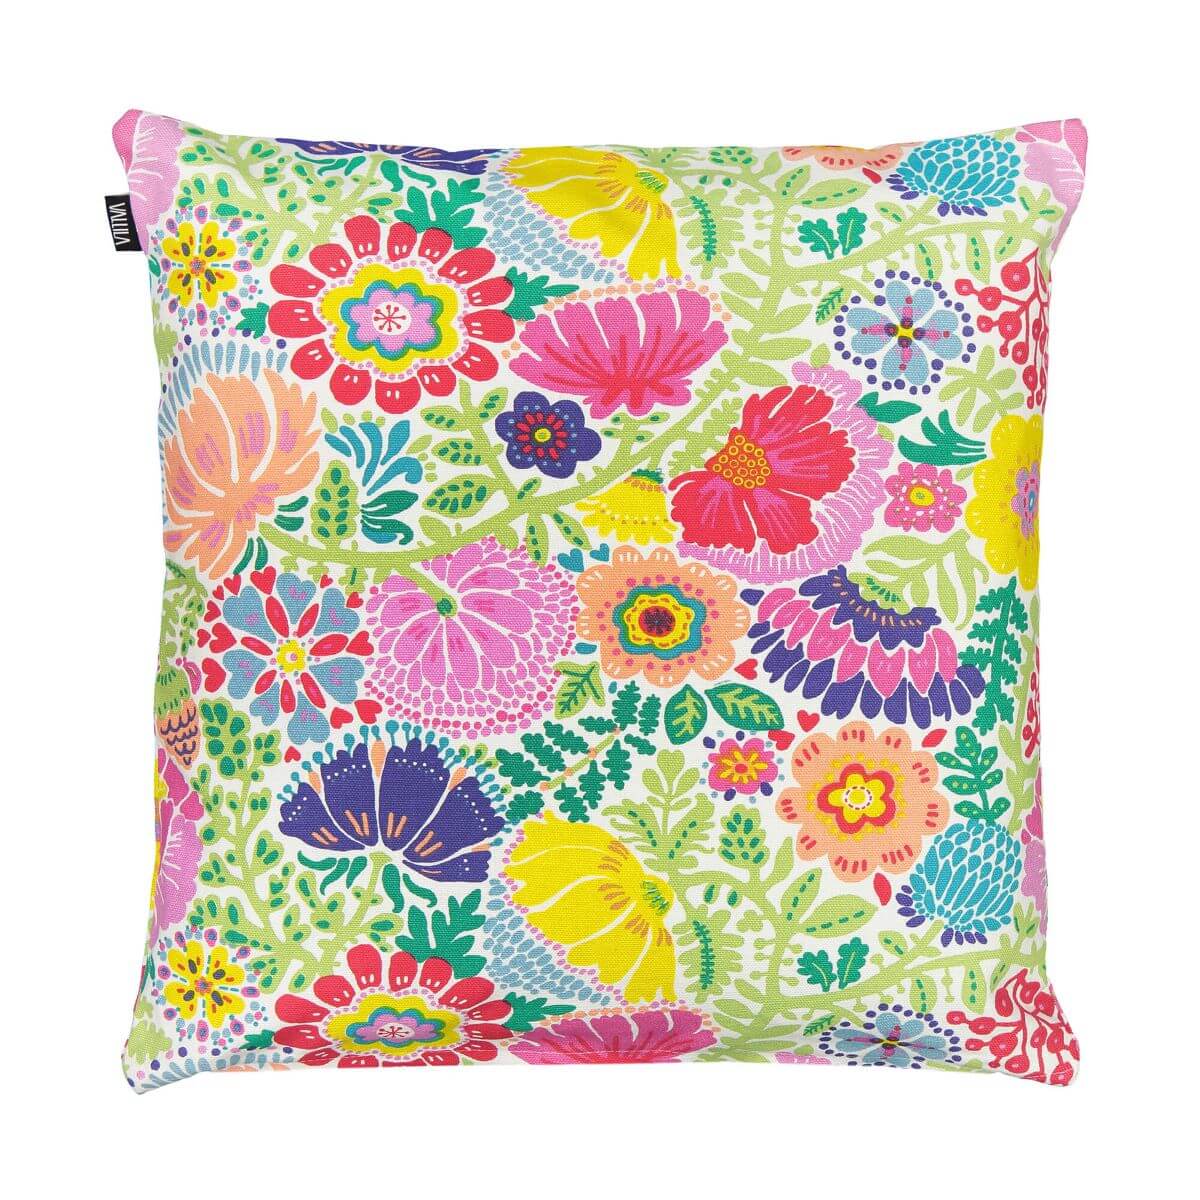 Poduszka dekoracyjna kolorowa w kwiaty HELKA. Widoczna w całości skandynawska bawełniana poduszka folkowa kolorowe kwiaty